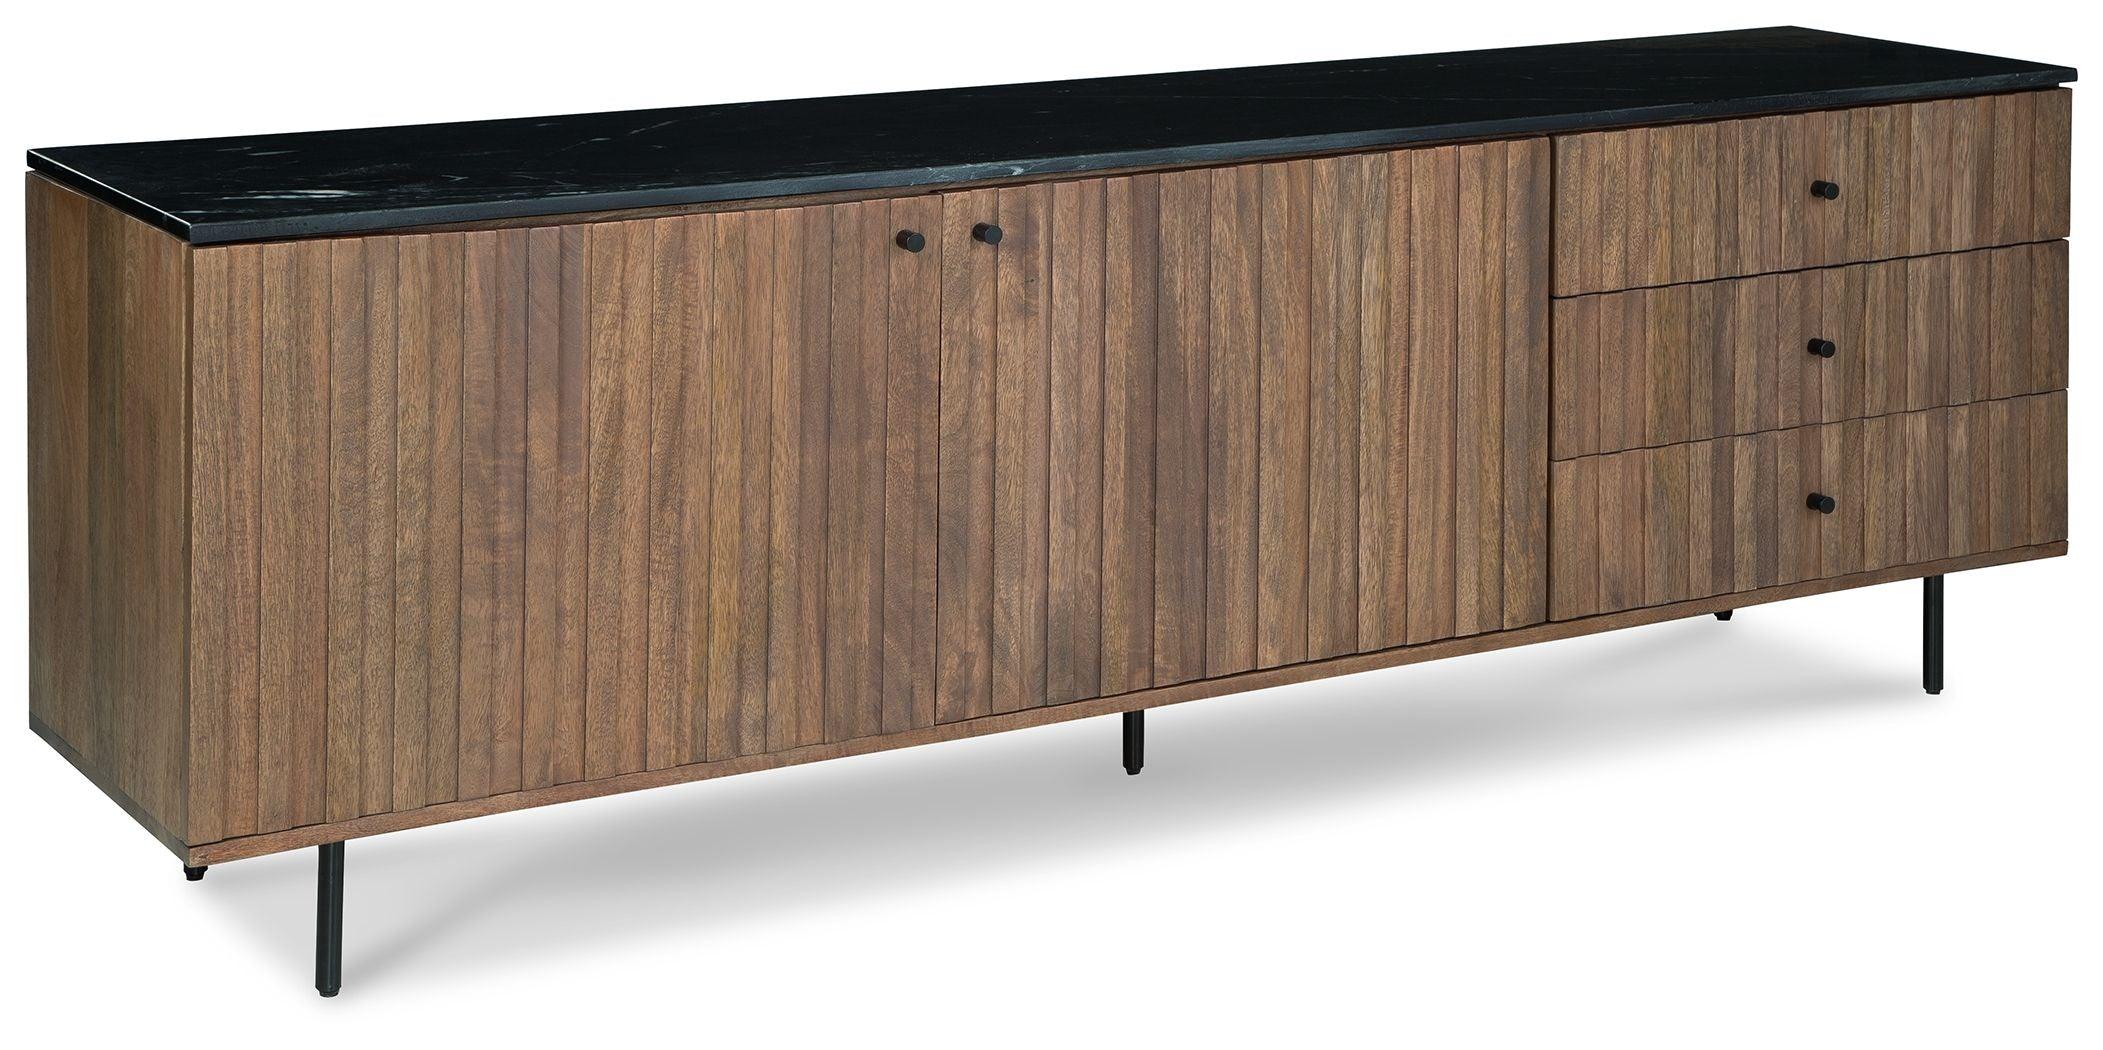 Signature Design by Ashley® - Barnford - Brown / Black - Accent Cabinet - 5th Avenue Furniture